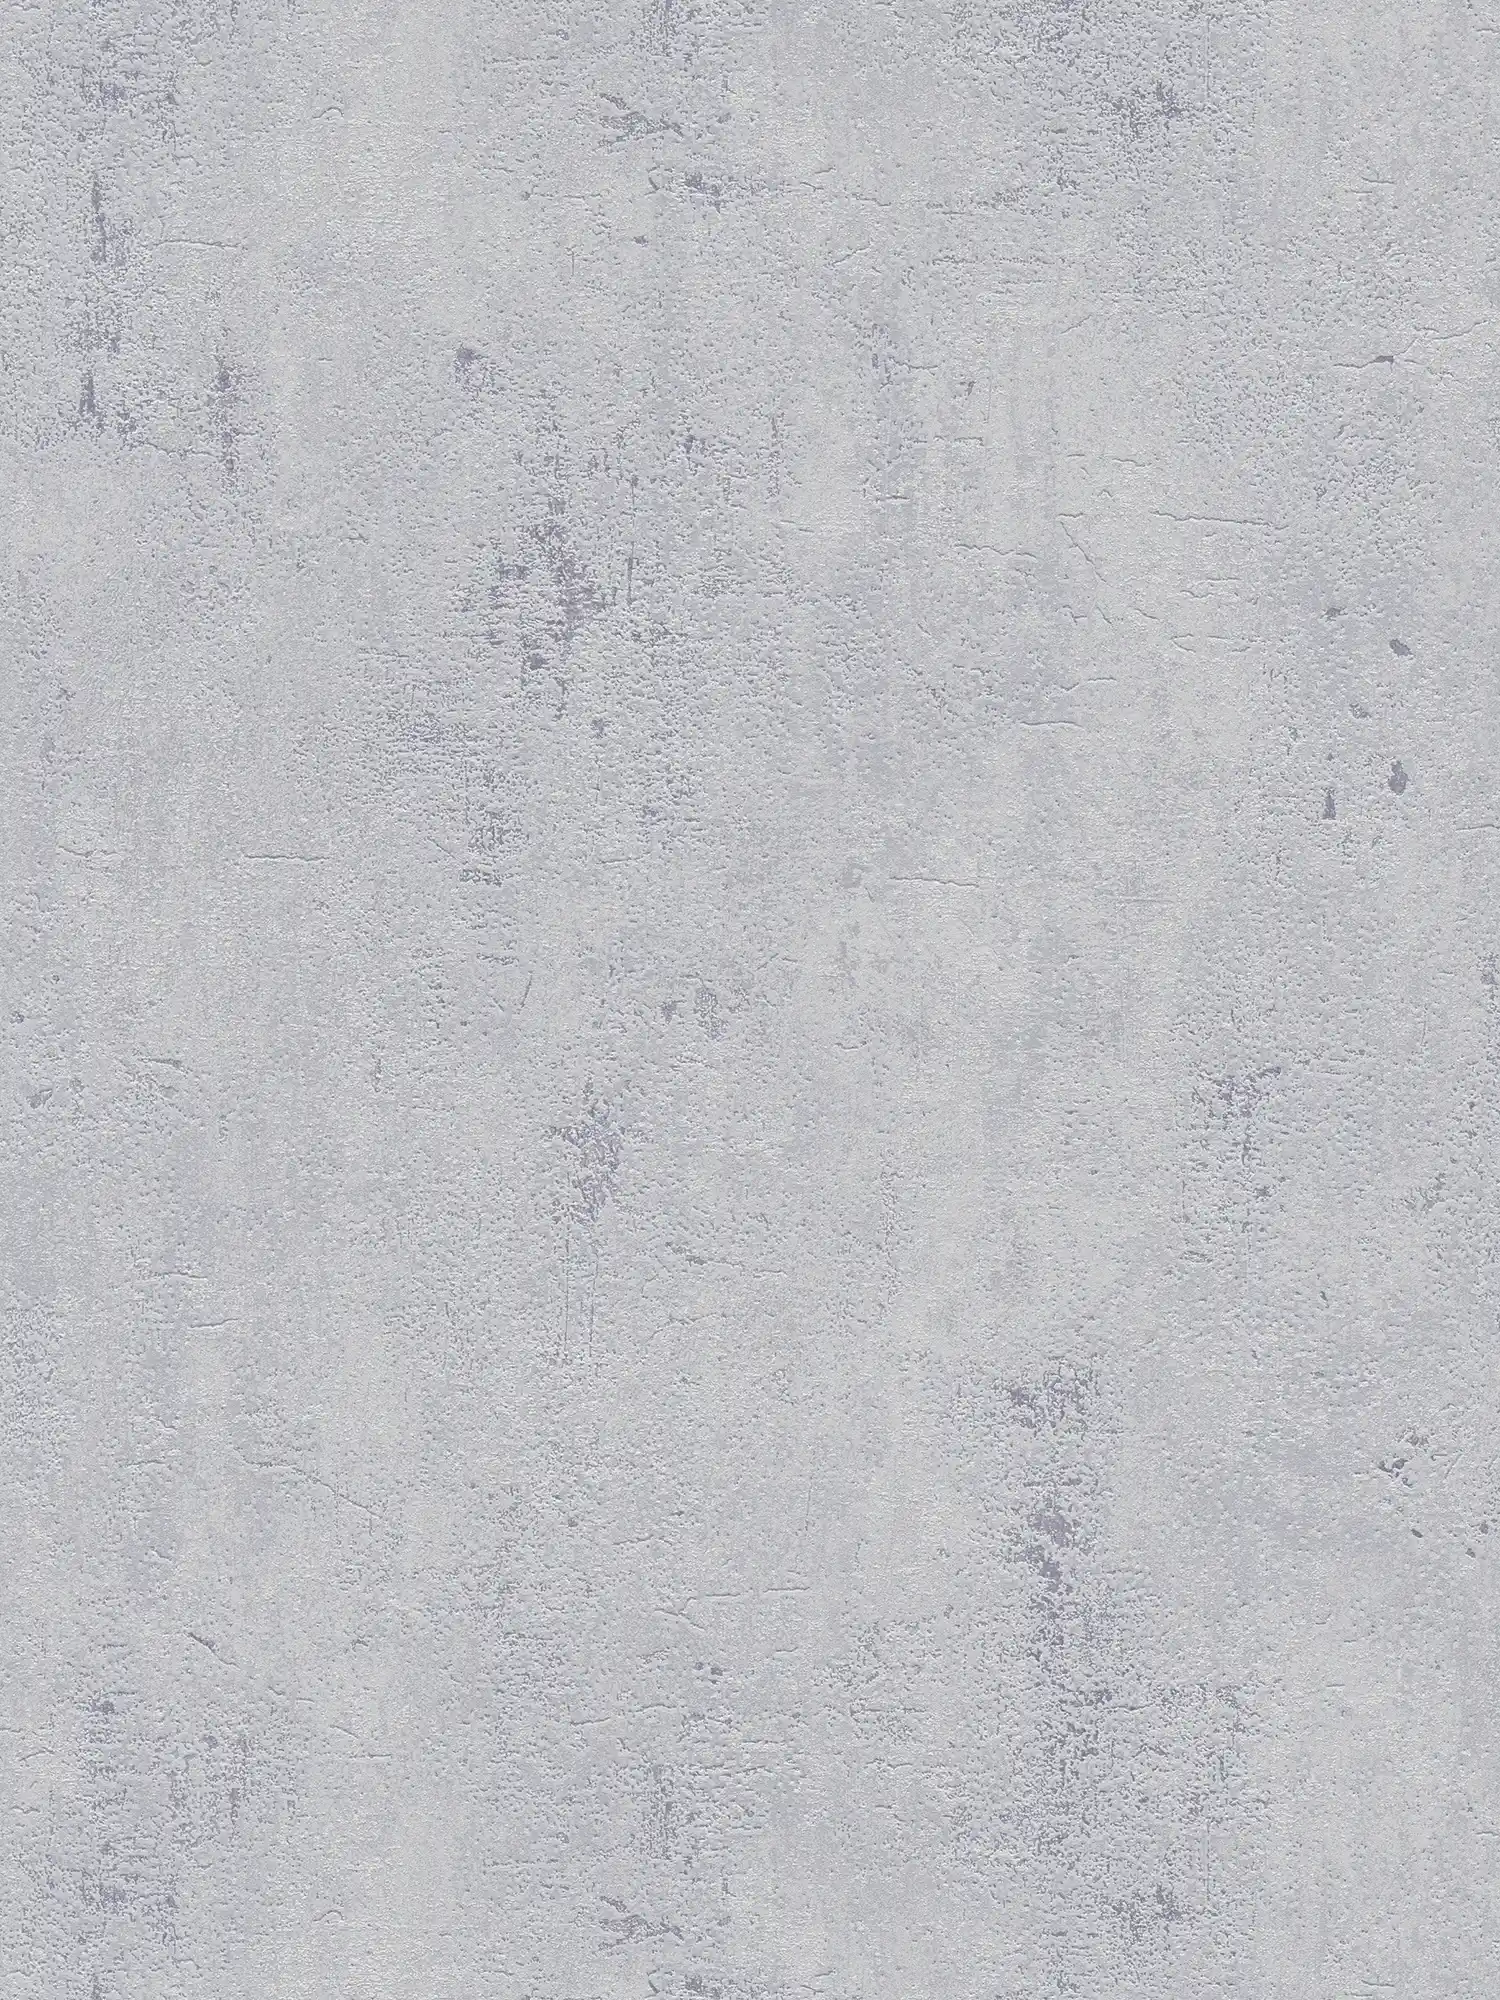 Eenheidsbehang met betonlook in rustiek design - grijs
